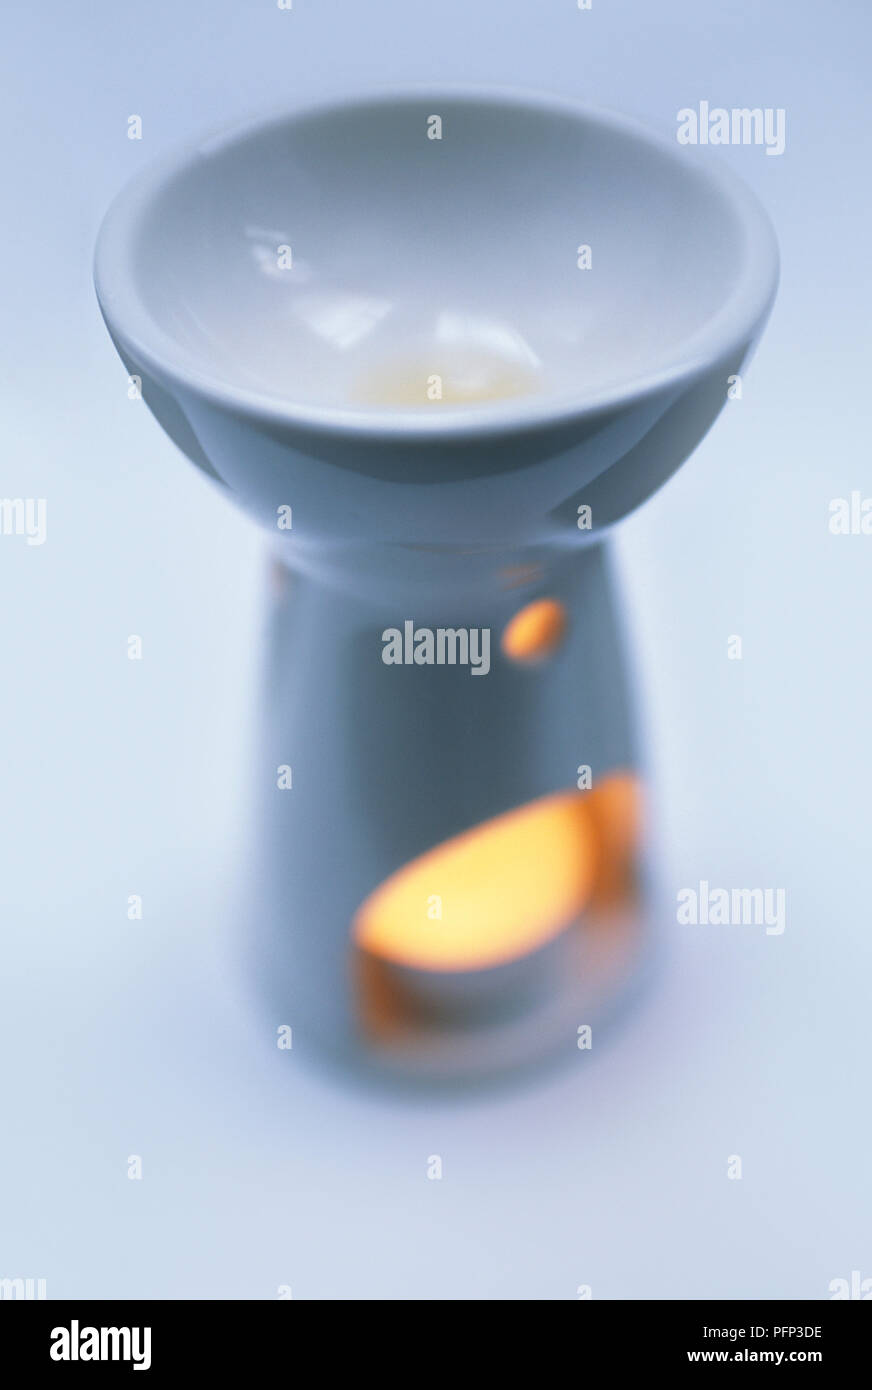 Ceramic lamp for burning essential oils, close-up Stock Photo